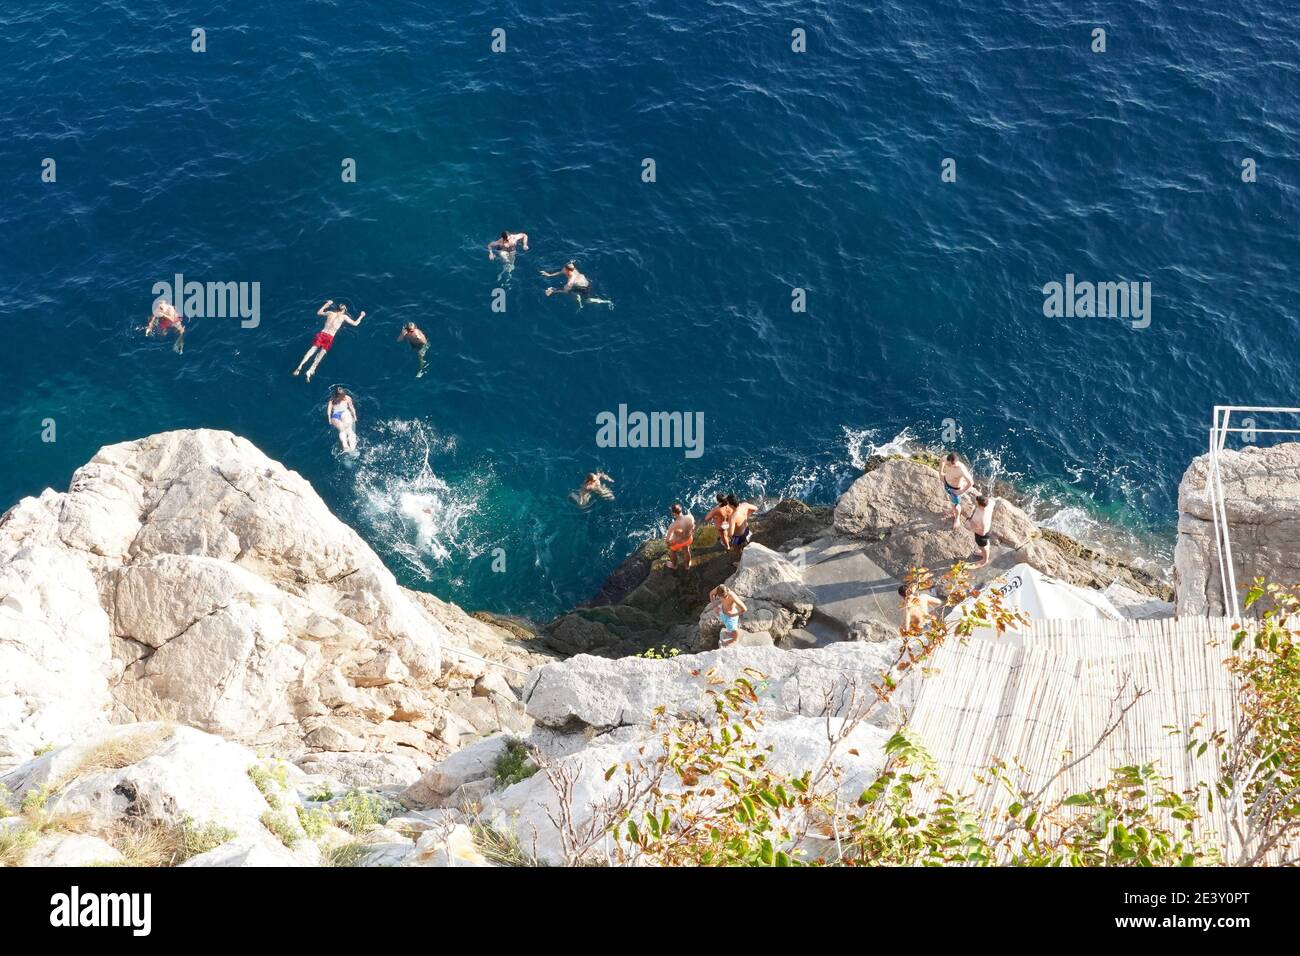 Croazia: Dubrovnik. Gruppo di giovani che nuotano nelle acque turchesi ai piedi del bar Buza e dei bastioni orientali della città vecchia, Foto Stock